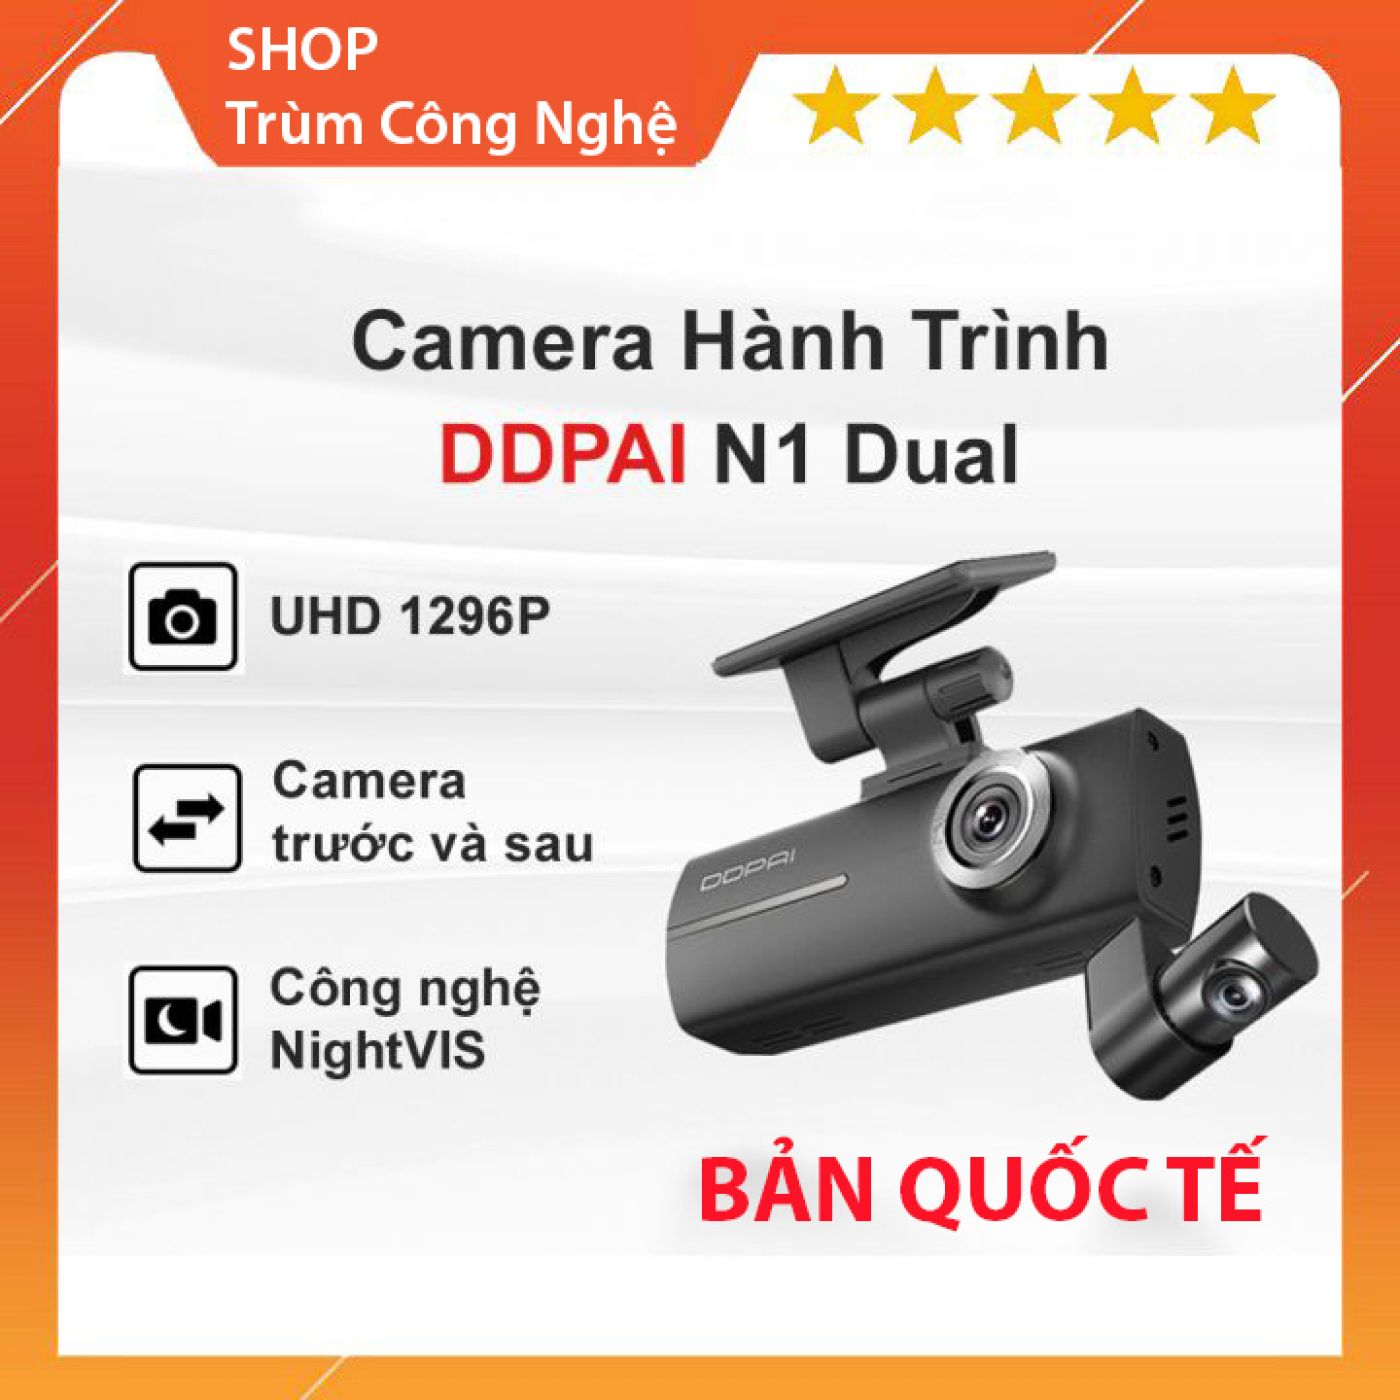 Camera Hành Trình DDPAI N1 Dual Trước và Sau - Bản Quốc Tế